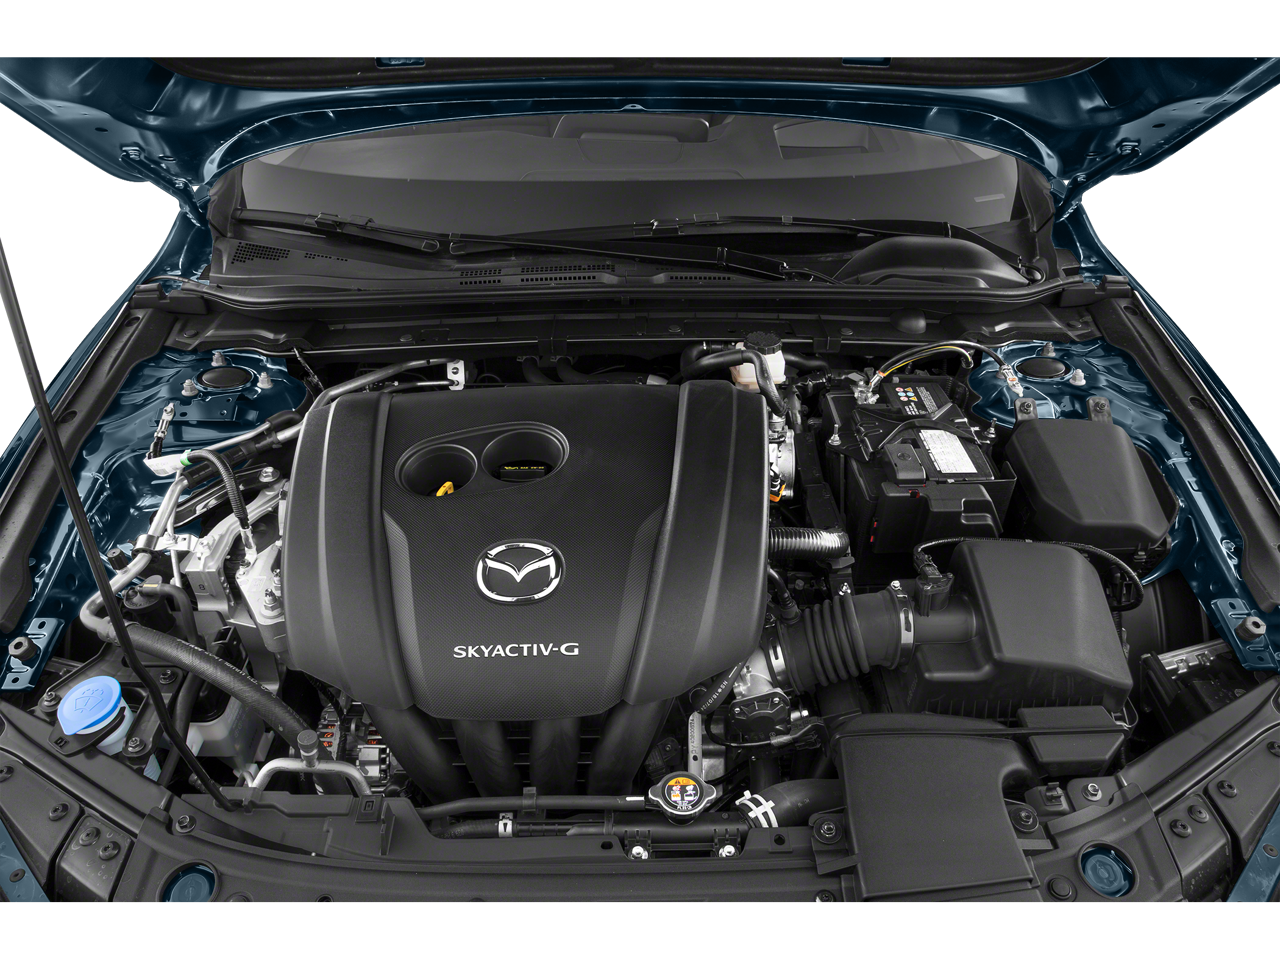 2019 Mazda Mazda3 Sedan w/Premium Pkg